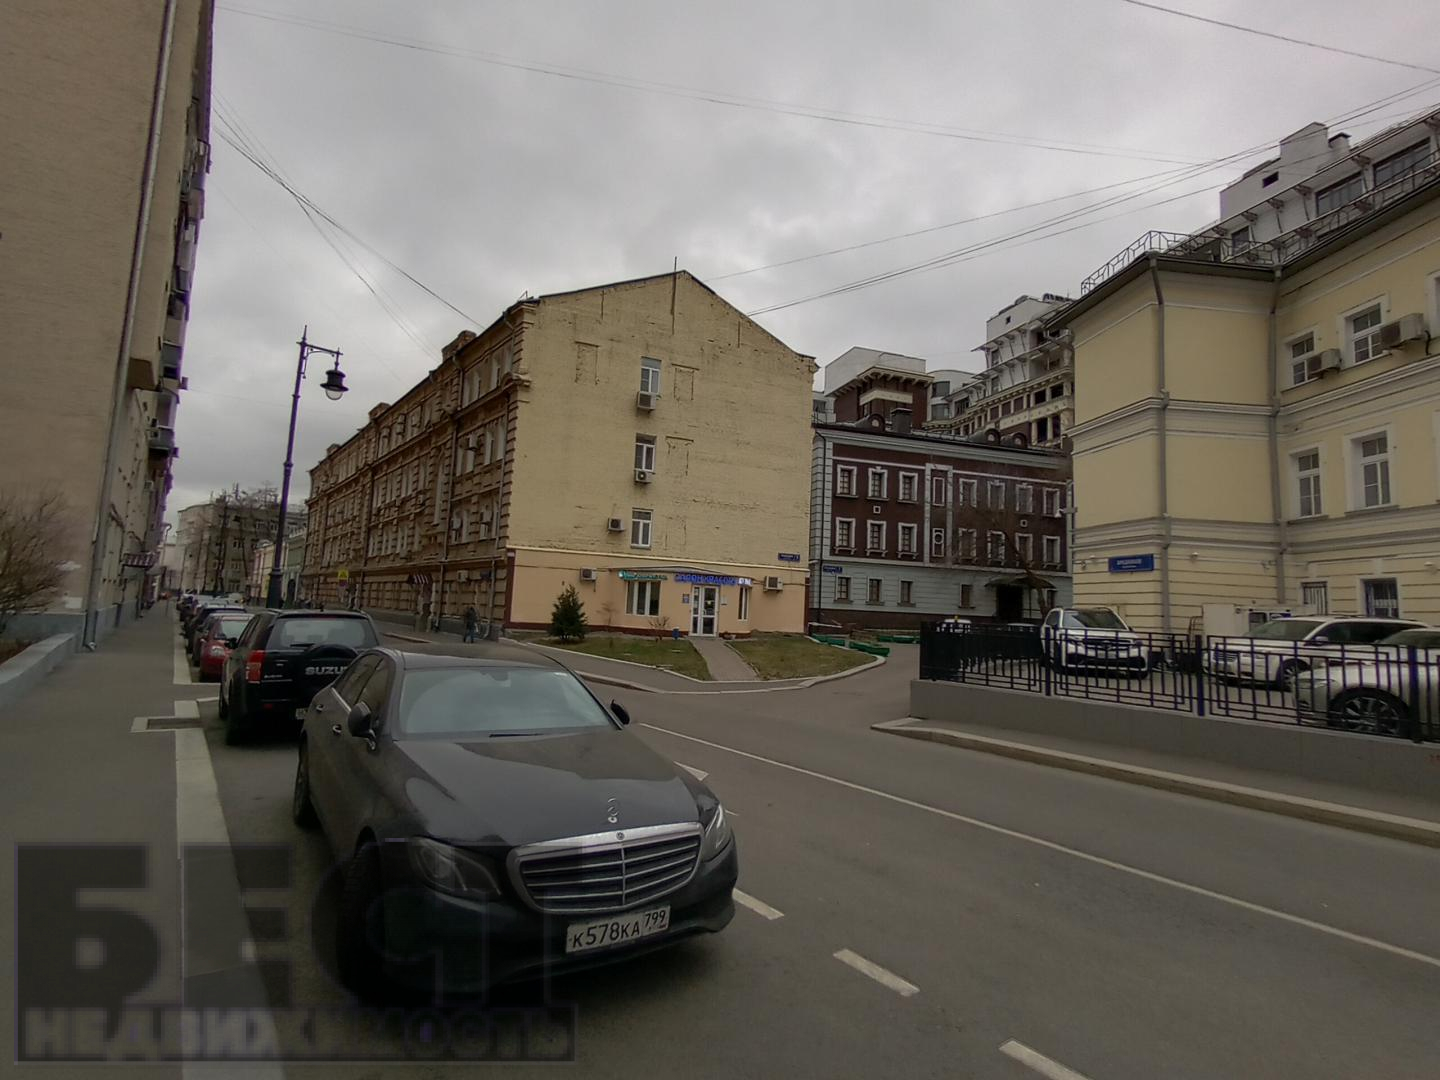 Продам недвижимость в Москве по адресу Бродников переулок, 7с1, площадь 1361 квм Недвижимость Москва (Россия) м, расположенного на первом этаже жилого здания с отдельным входом